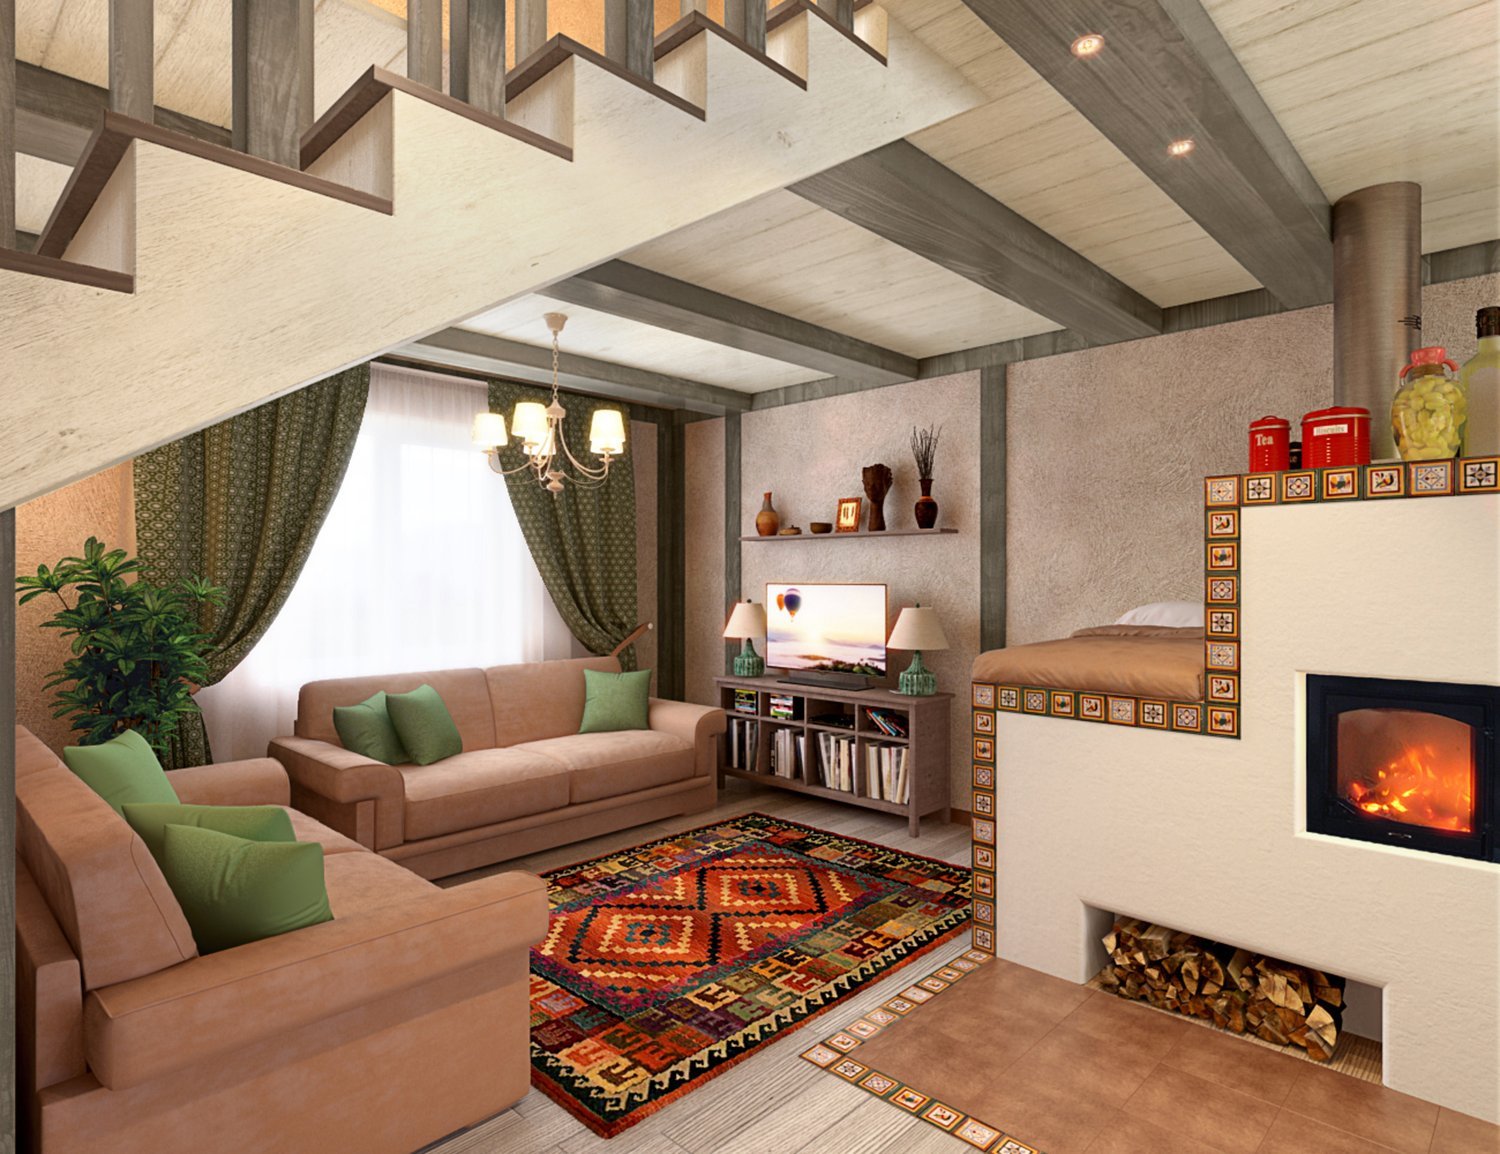 Идеи дизайна интерьера деревянного дома из бруса, фото с примерами